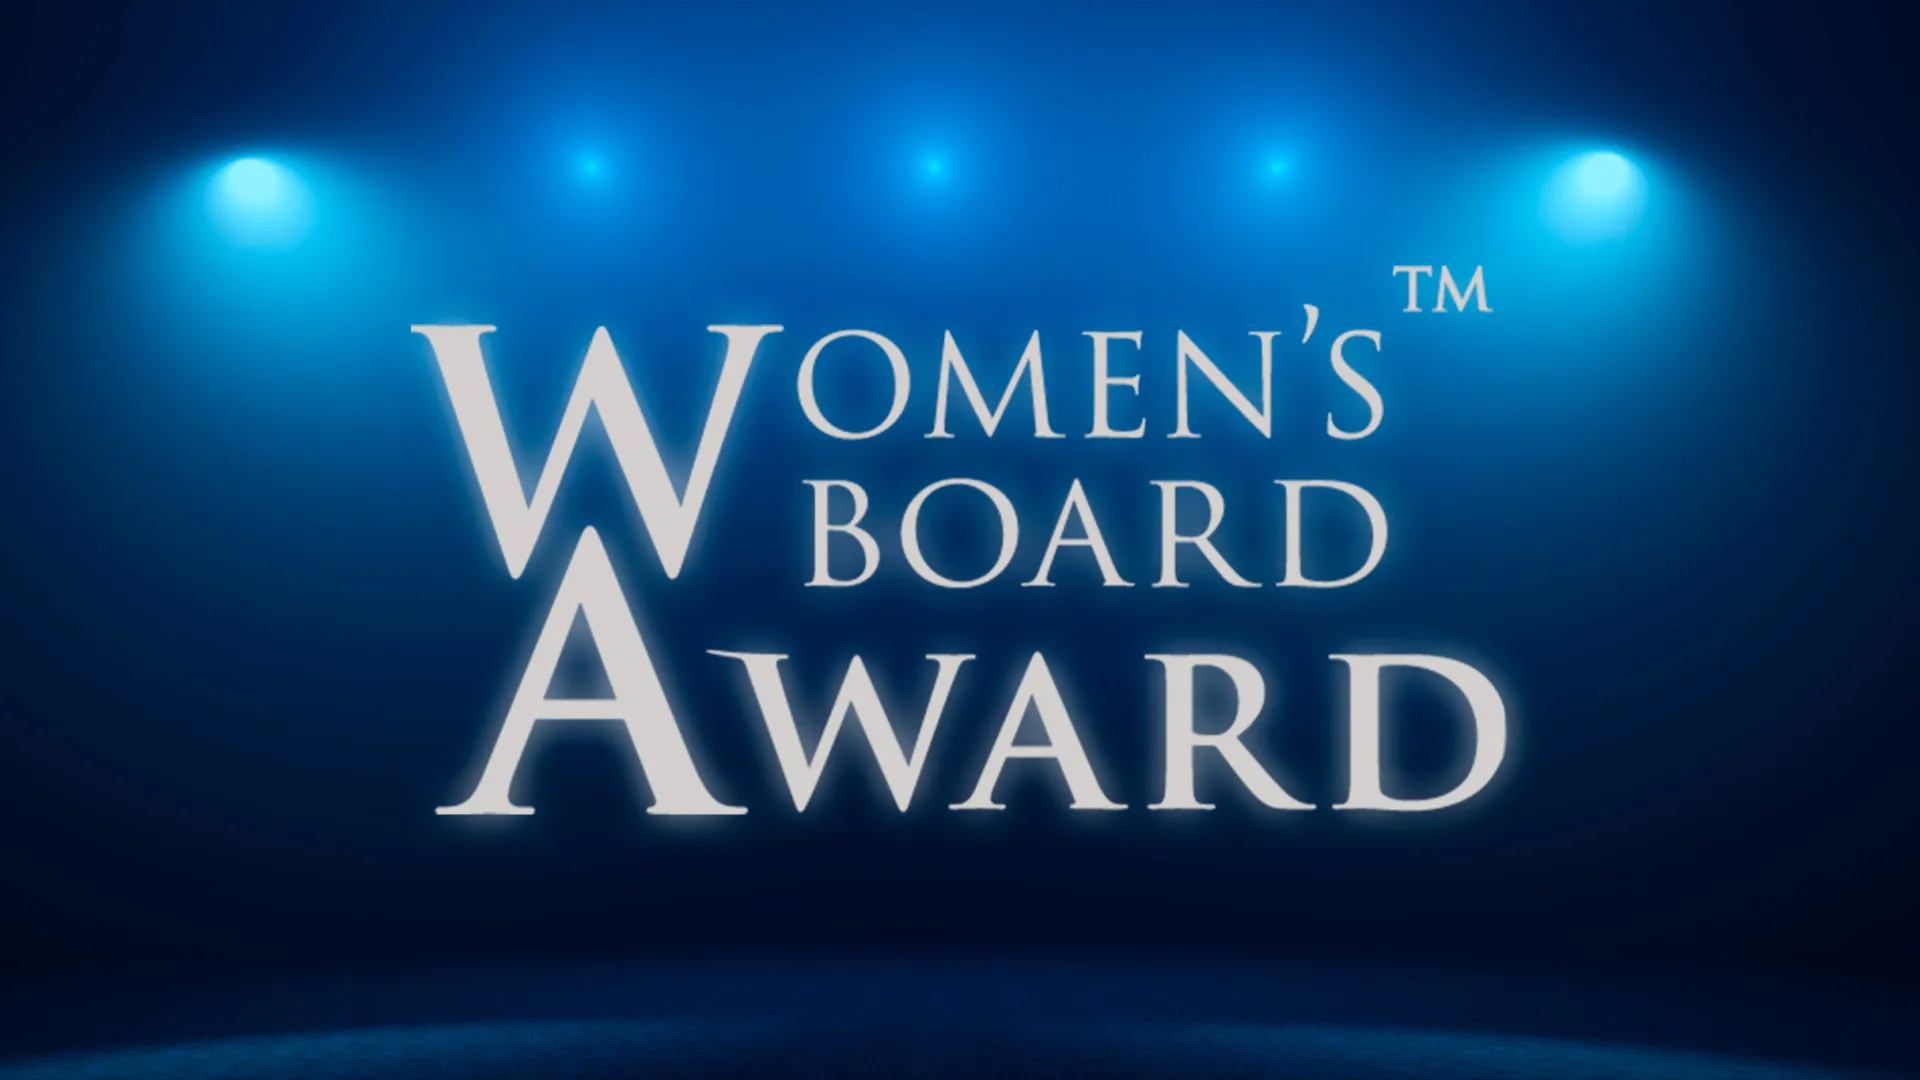 Women’s Board Award 2019